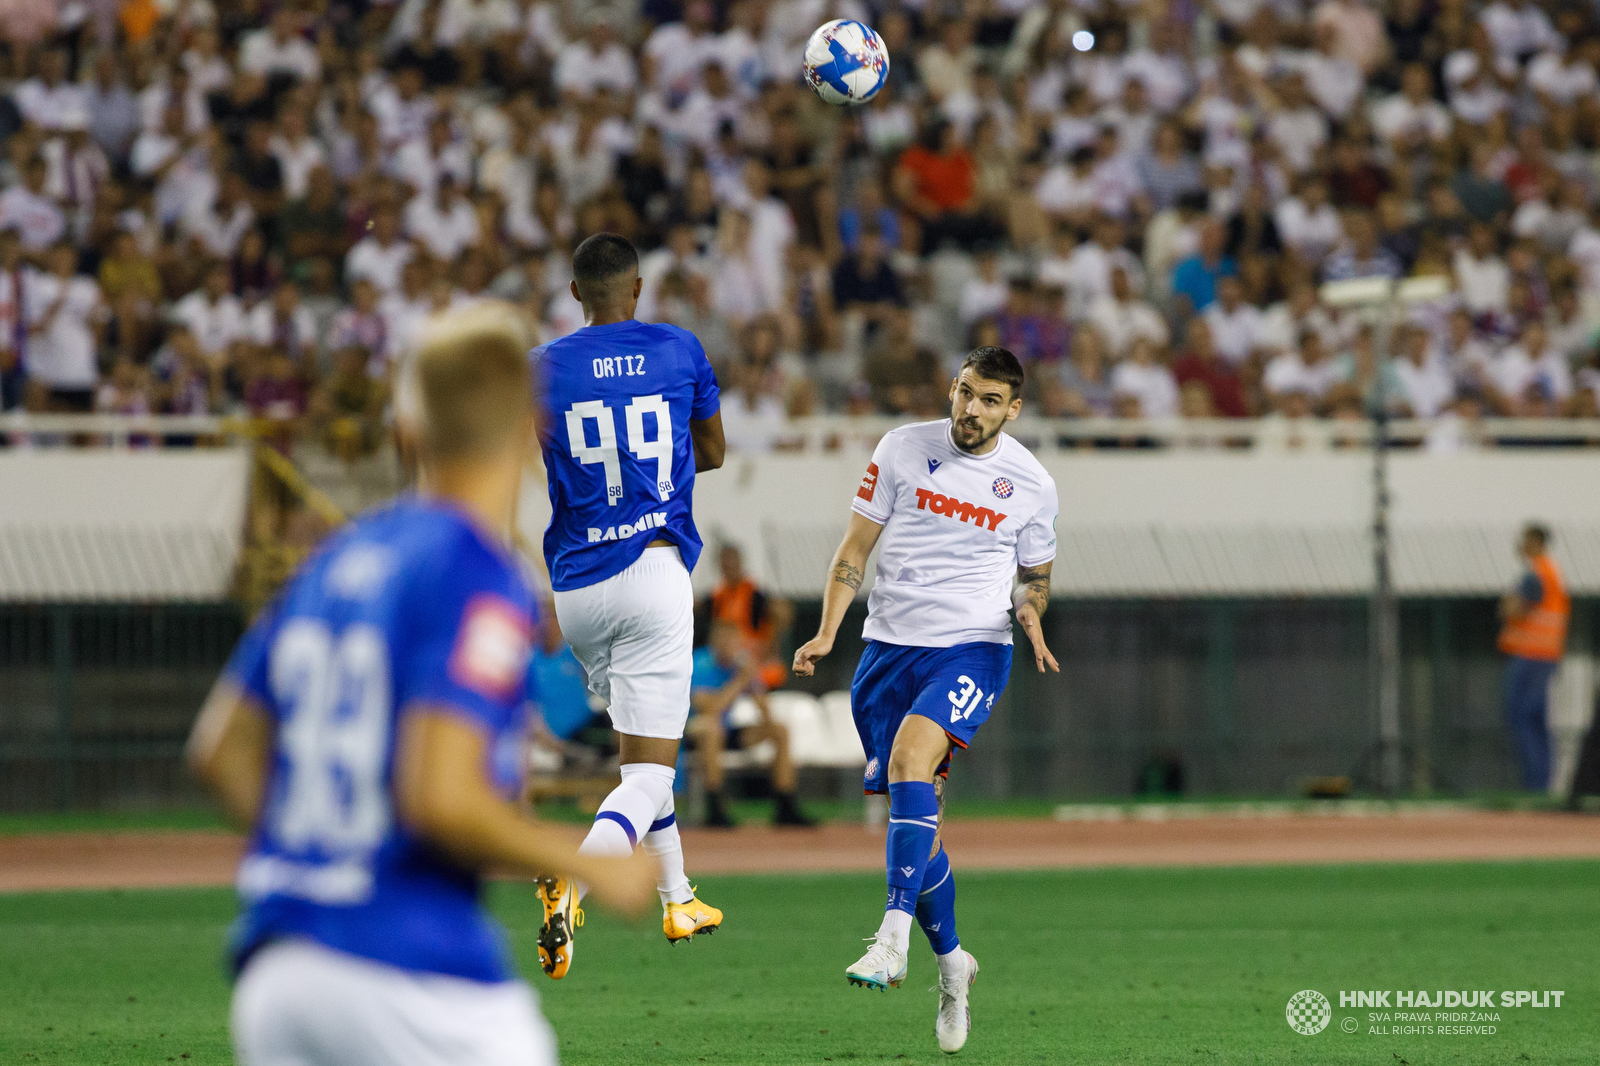 Hajduk - Slaven B. 3:0